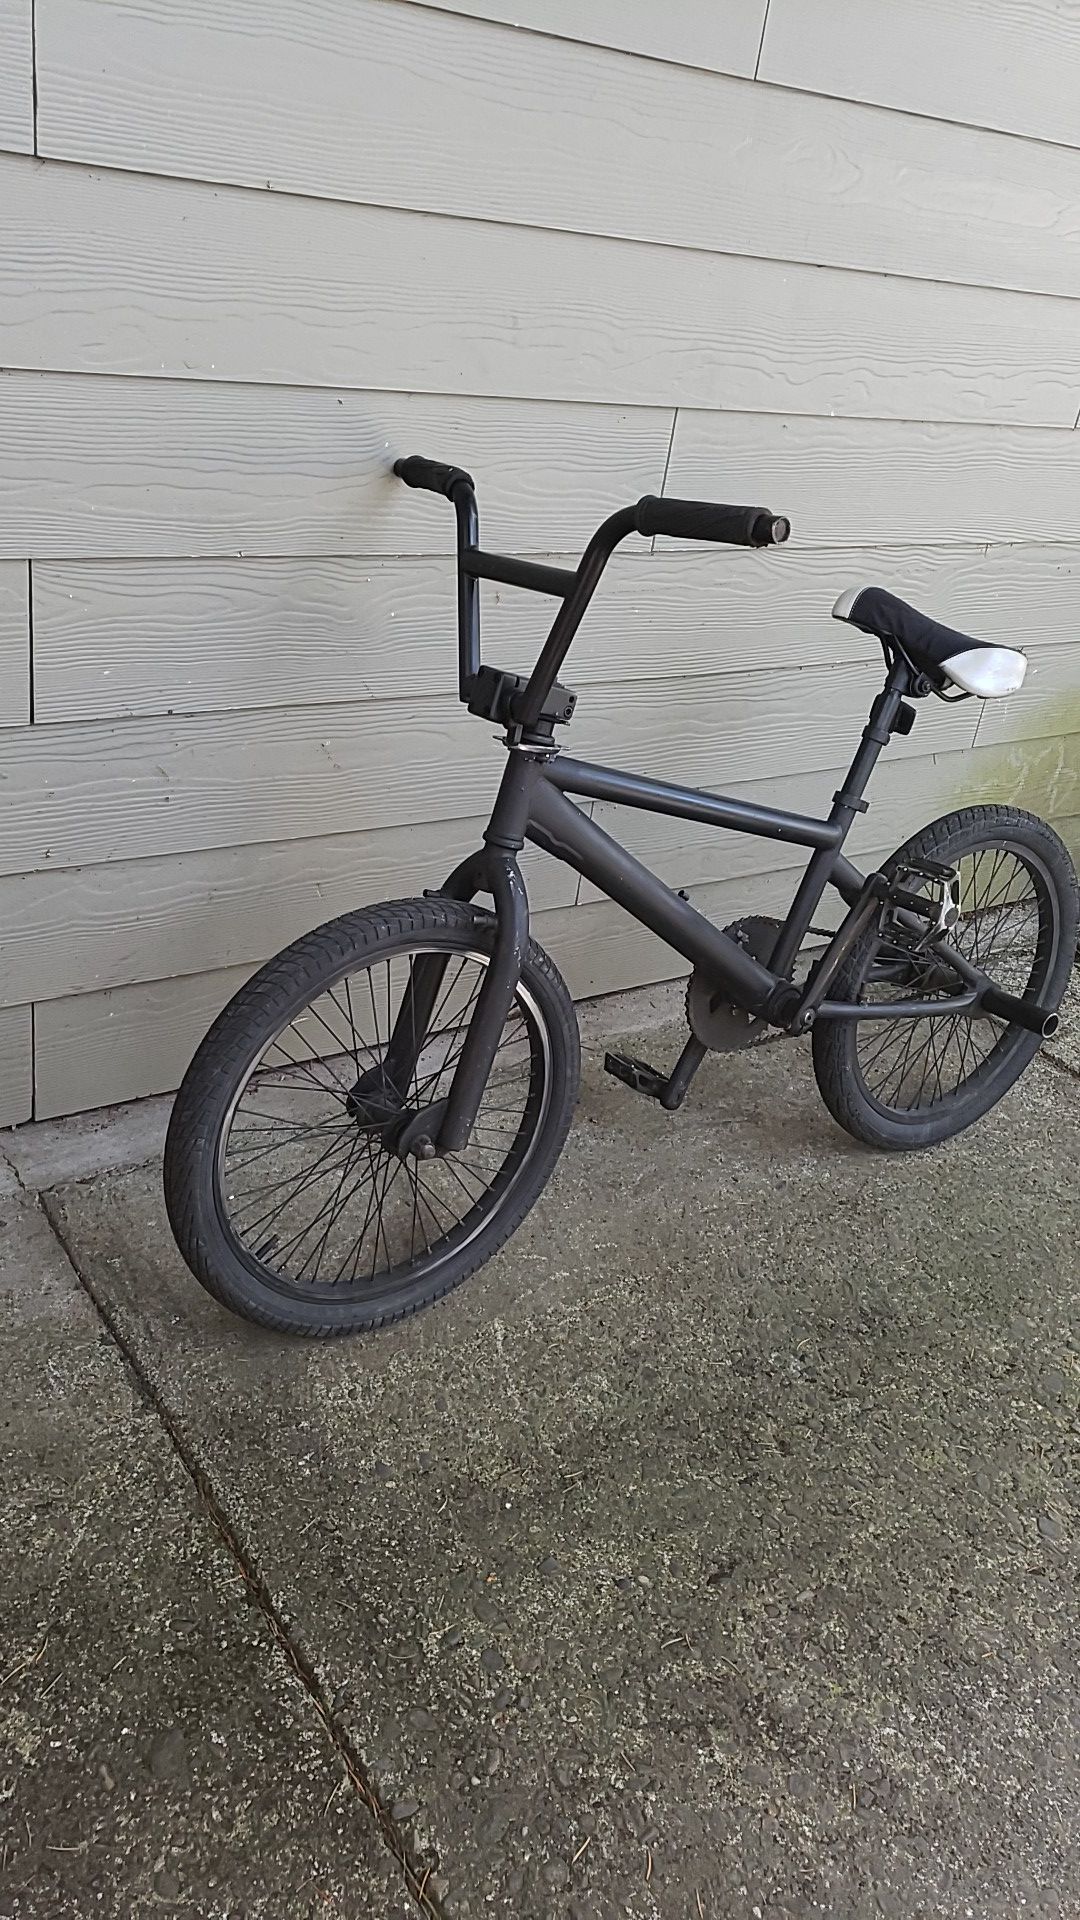 20inch bmx bike (it has been stolen) if you find it reward 20$